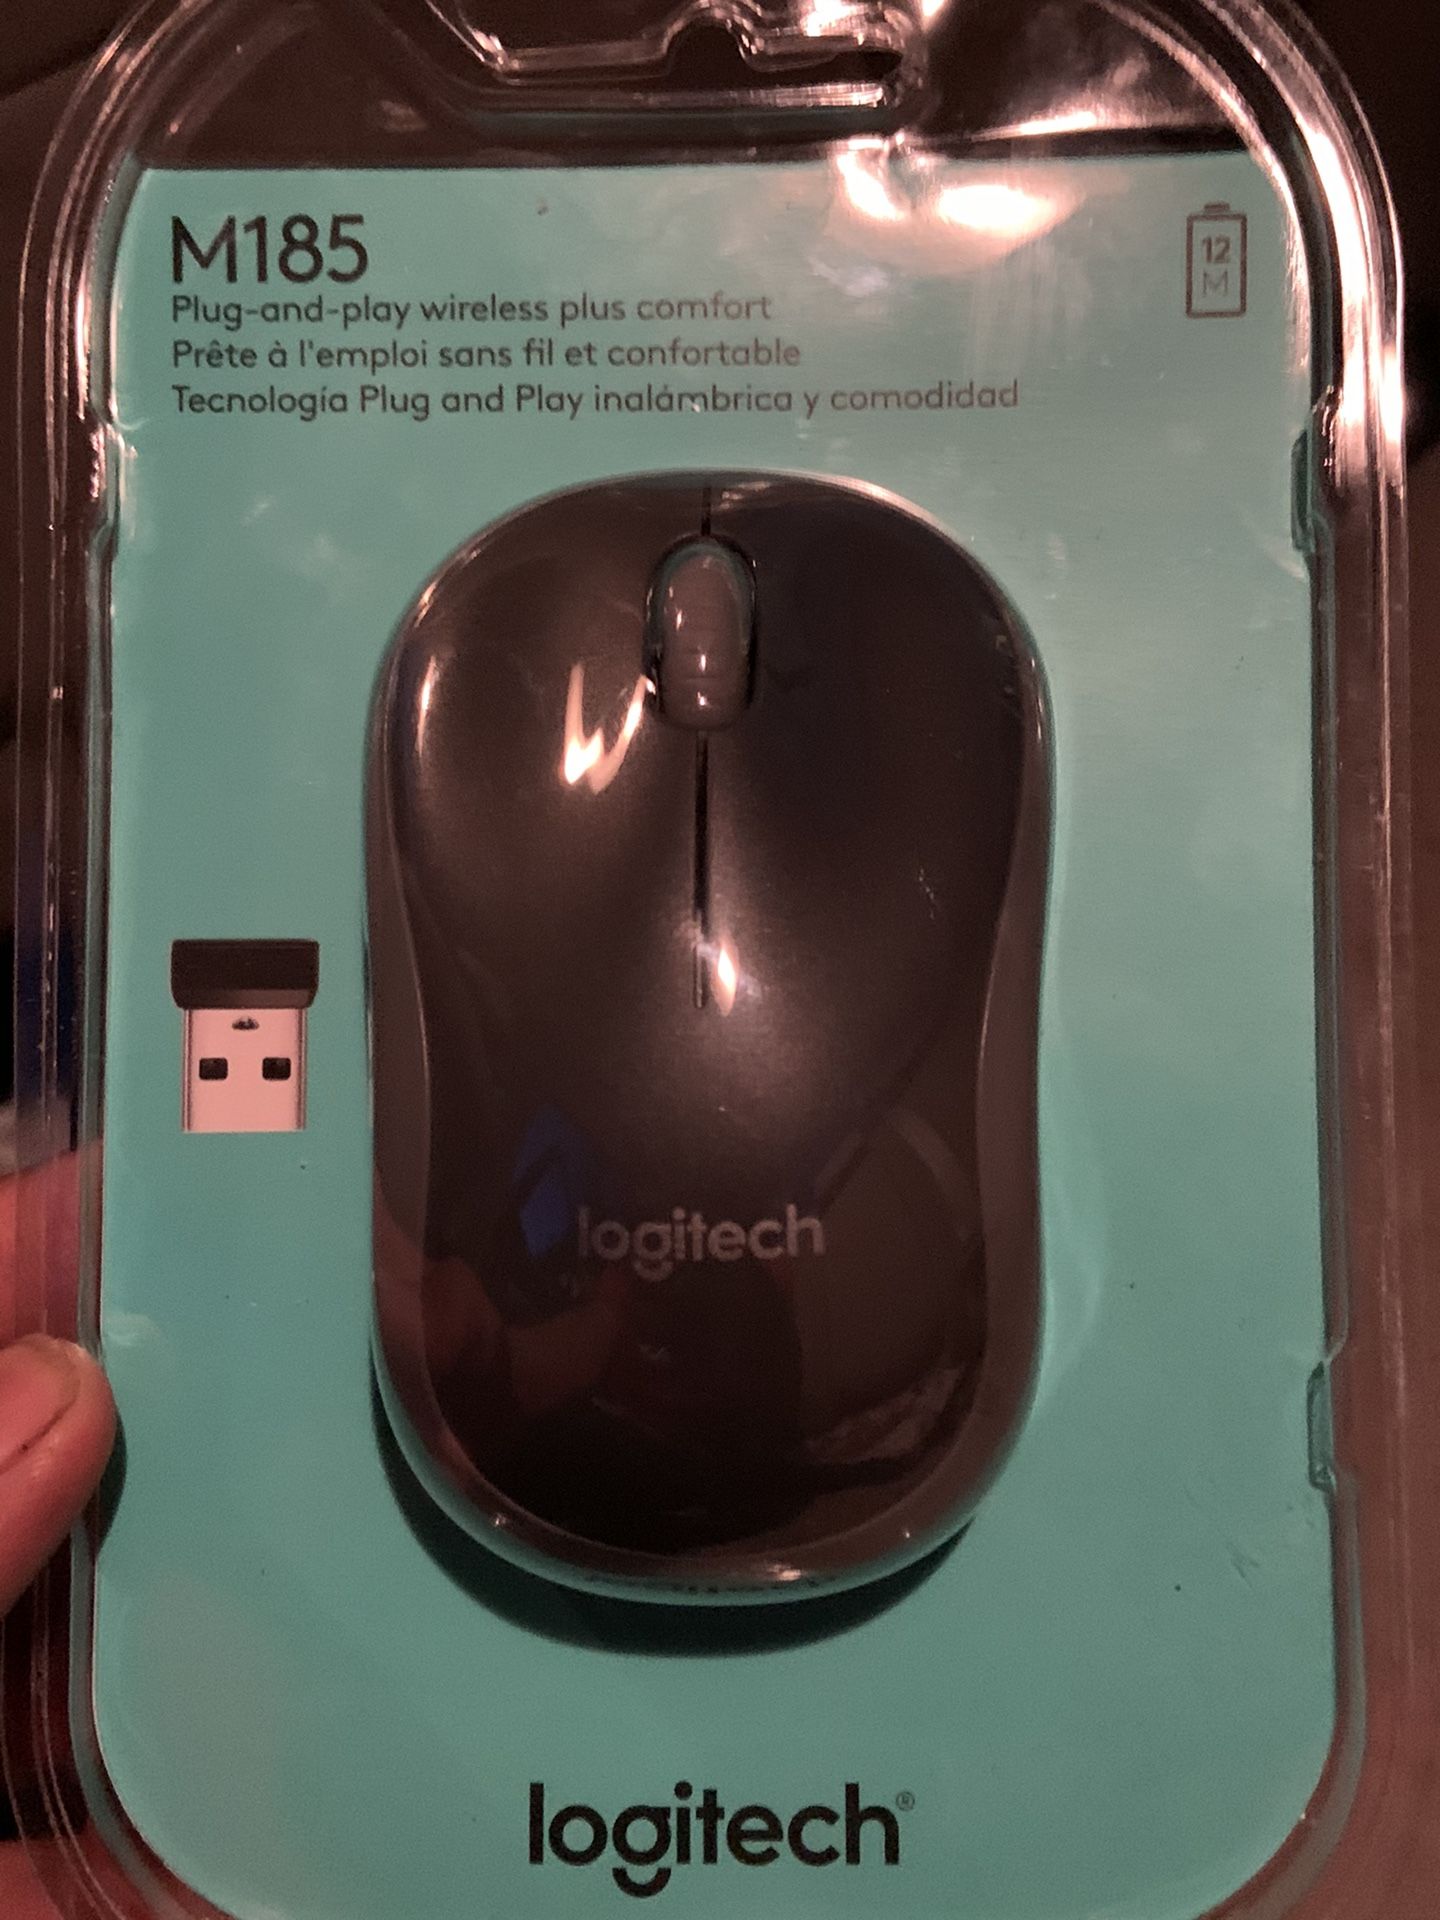 Wireless Logitech Mouse (BEST OFFER TAKES IT)